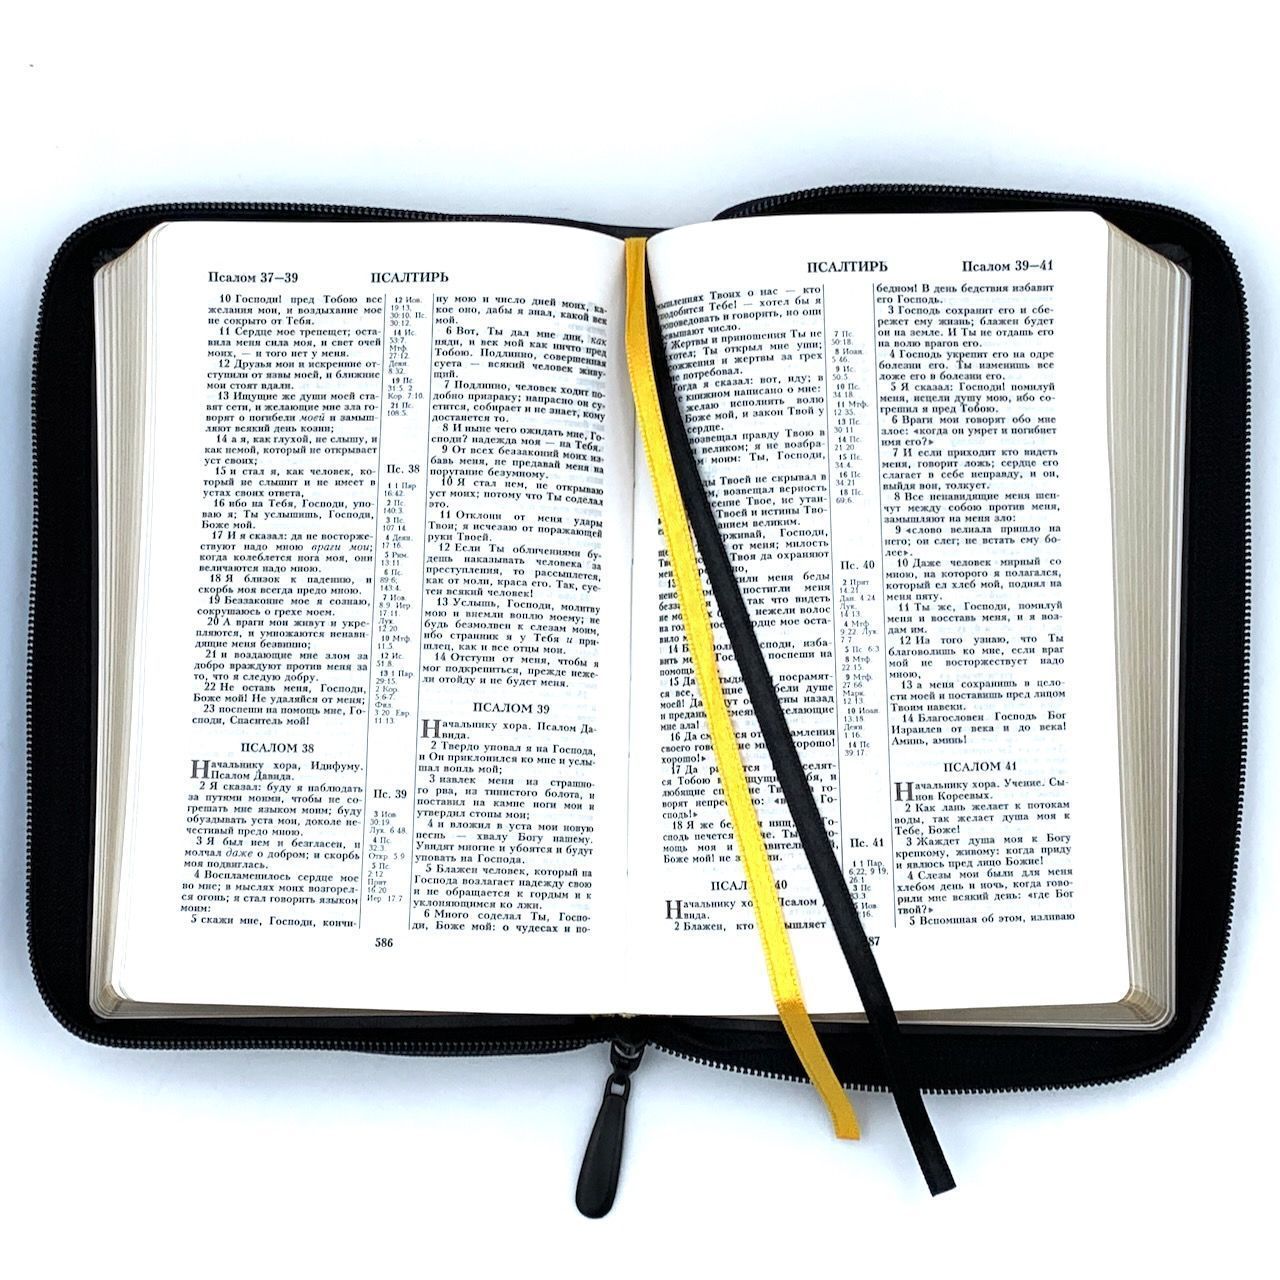 Библия 053z код B1 надпись "Библия", кожаный переплет на молнии, цвет черный, формат 140*202 мм